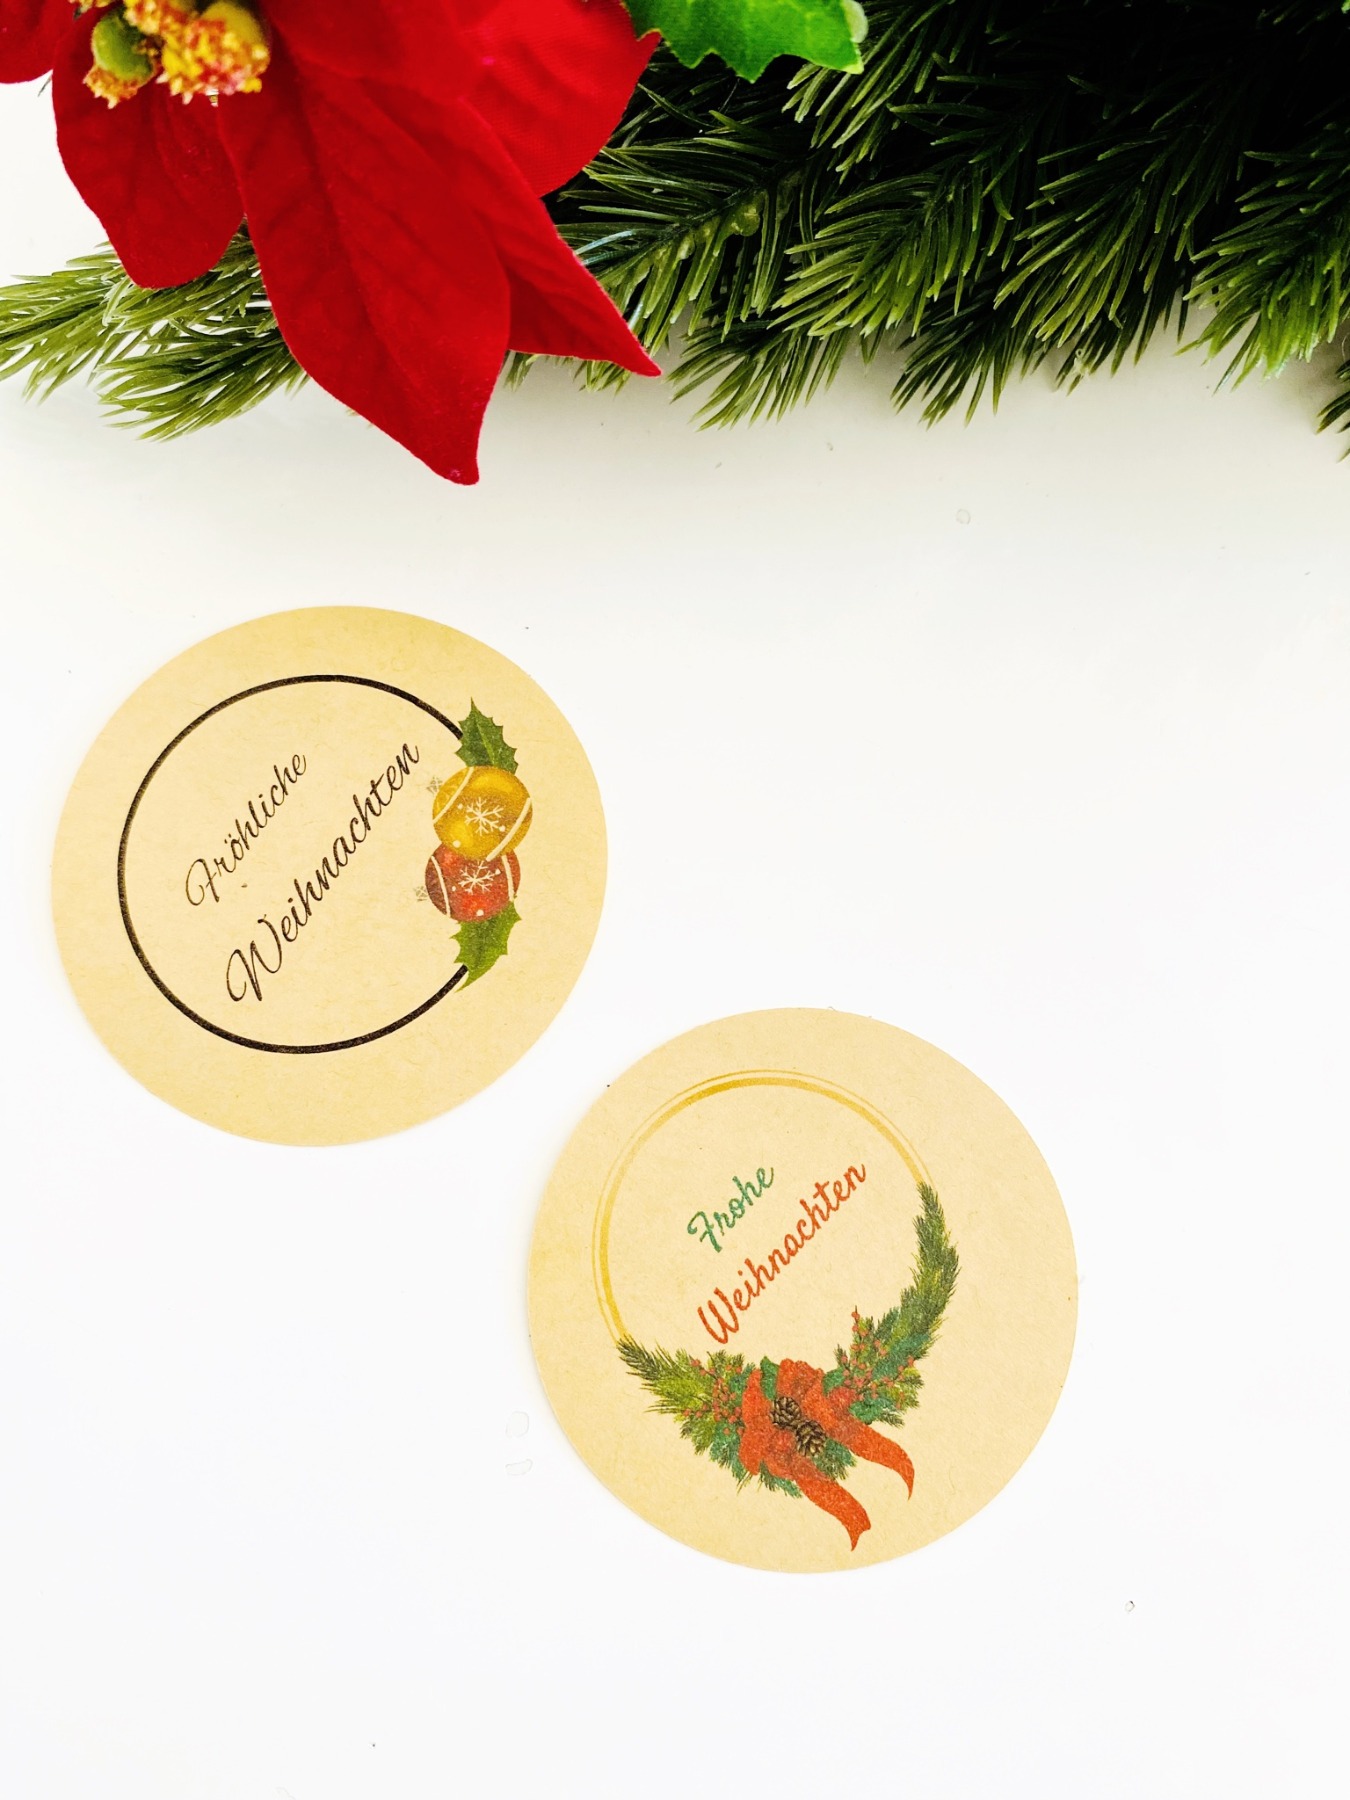 Bastelset für Weihnachten, DIY Kit Weihnachtskarten basteln, Weihnachtsgeschenke verpacken Ideen 2